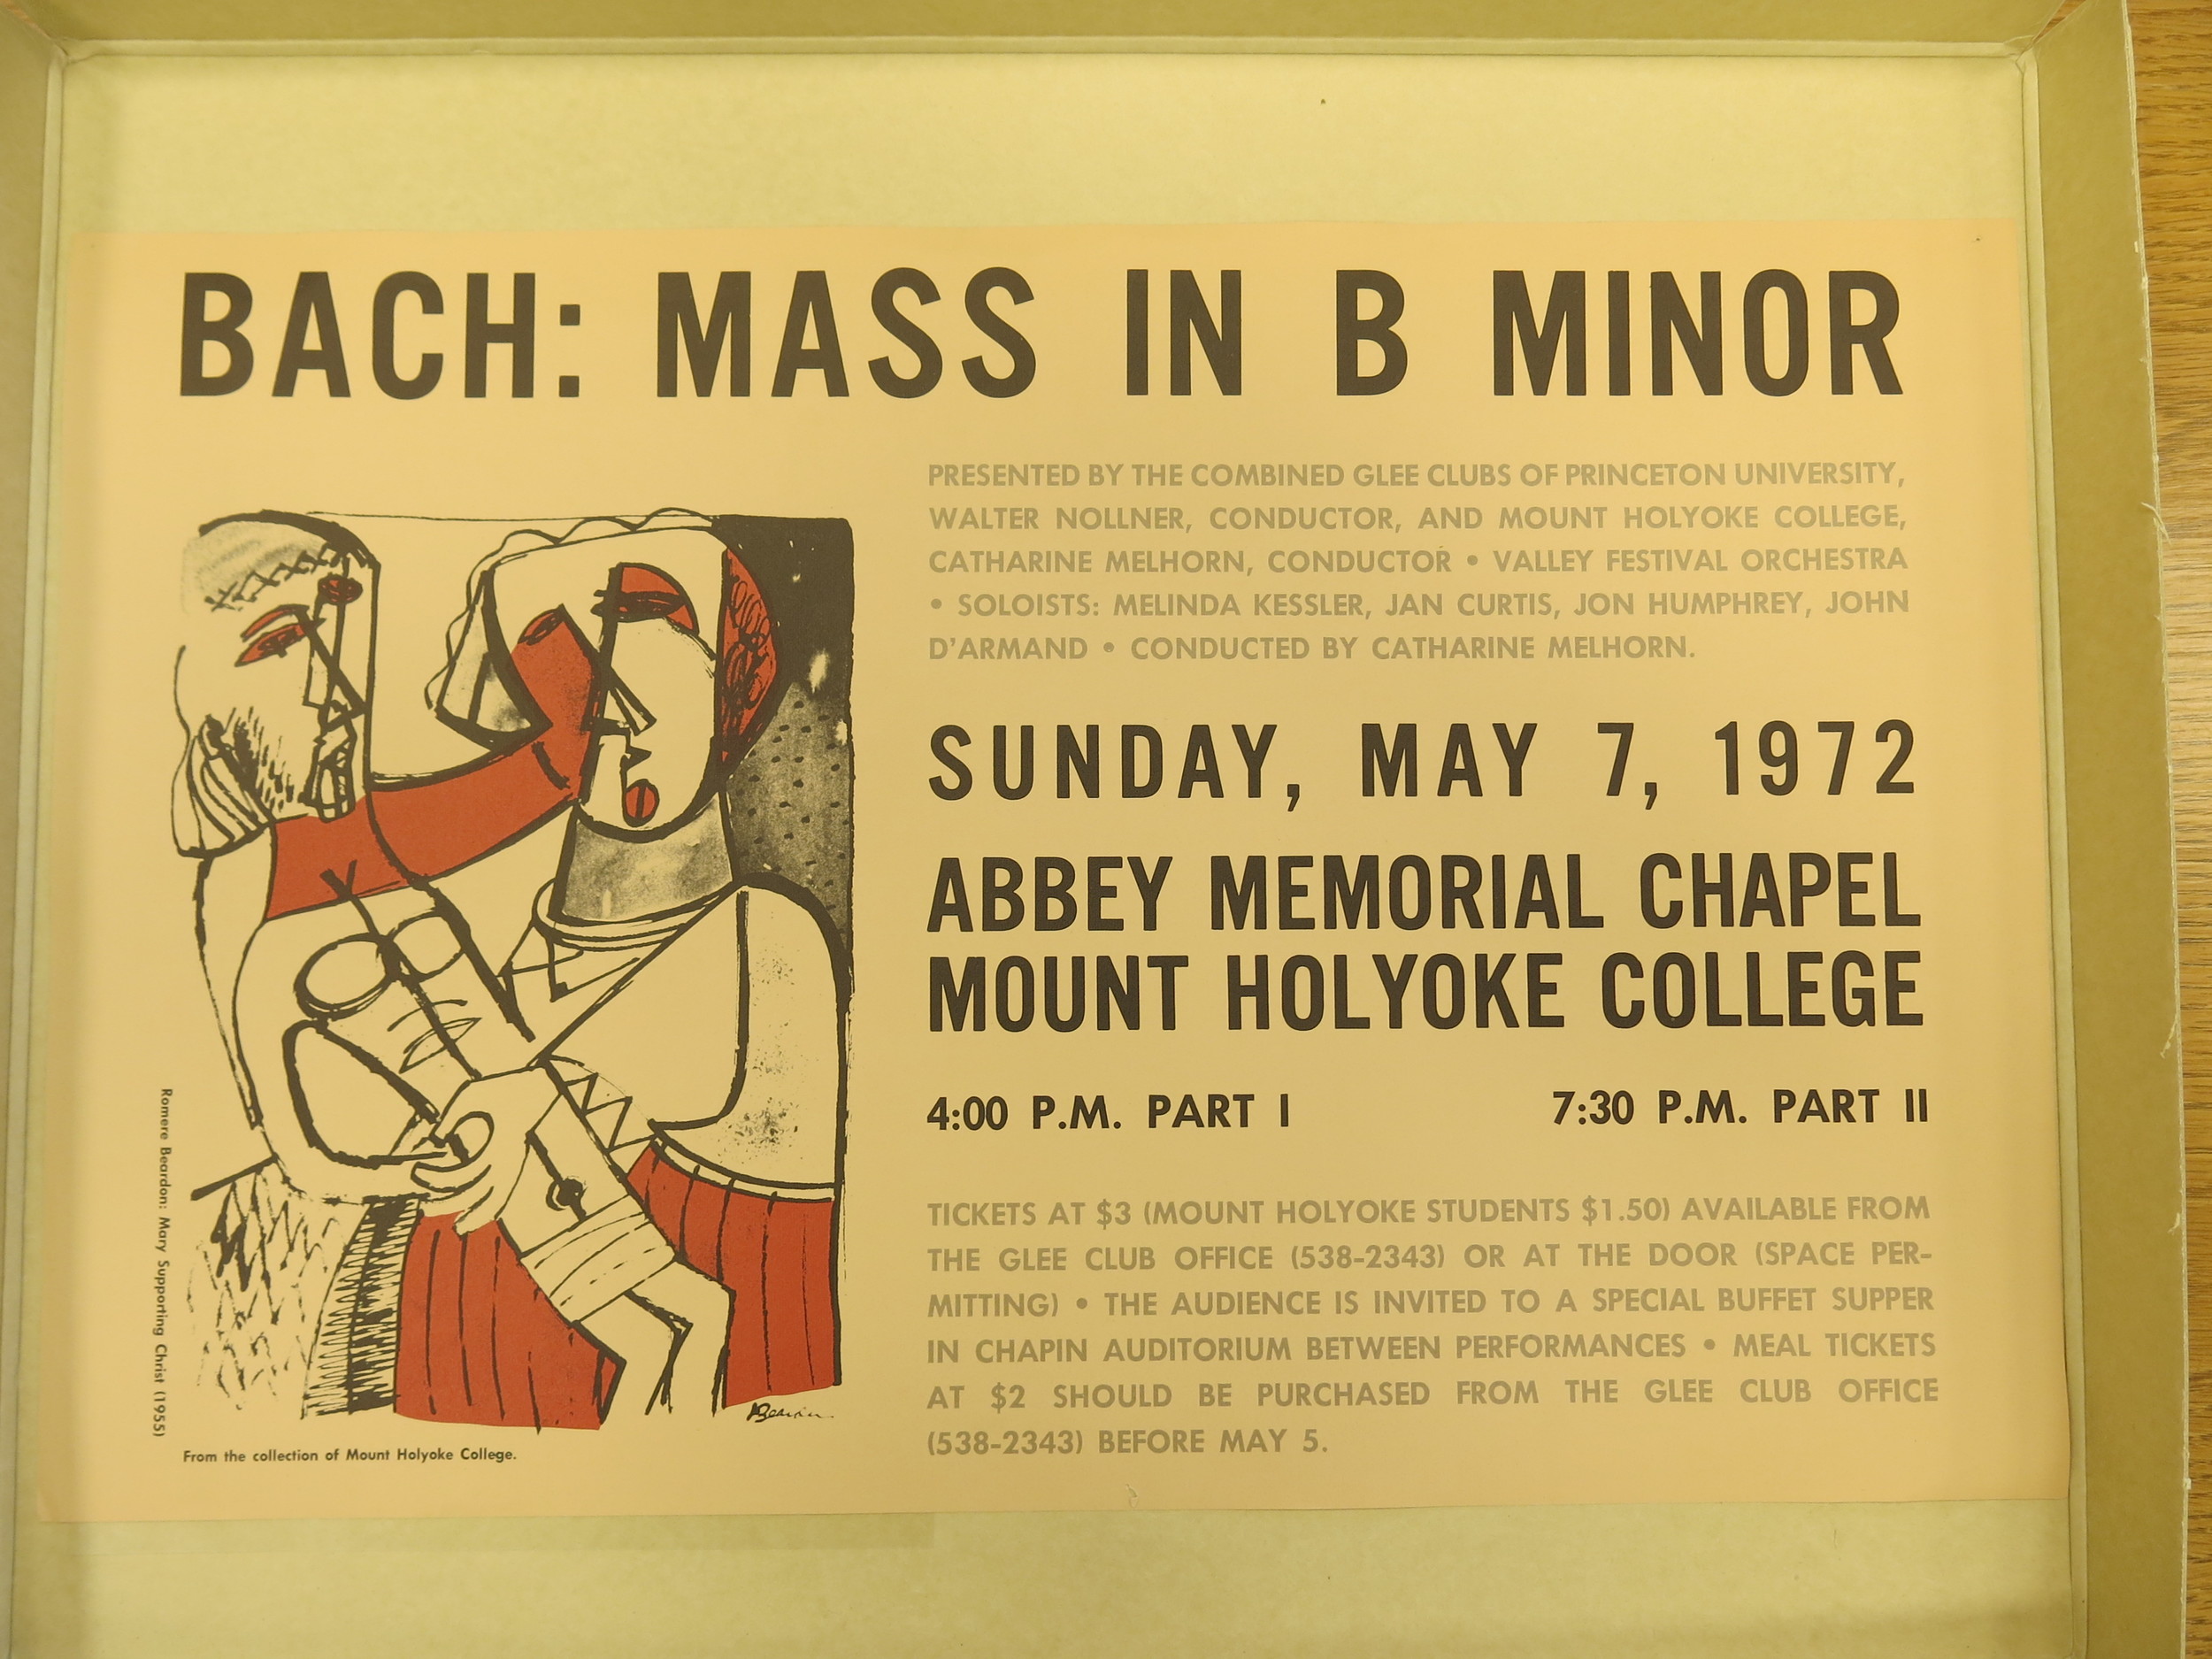 Bach B minor mass 1972 poster.jpeg